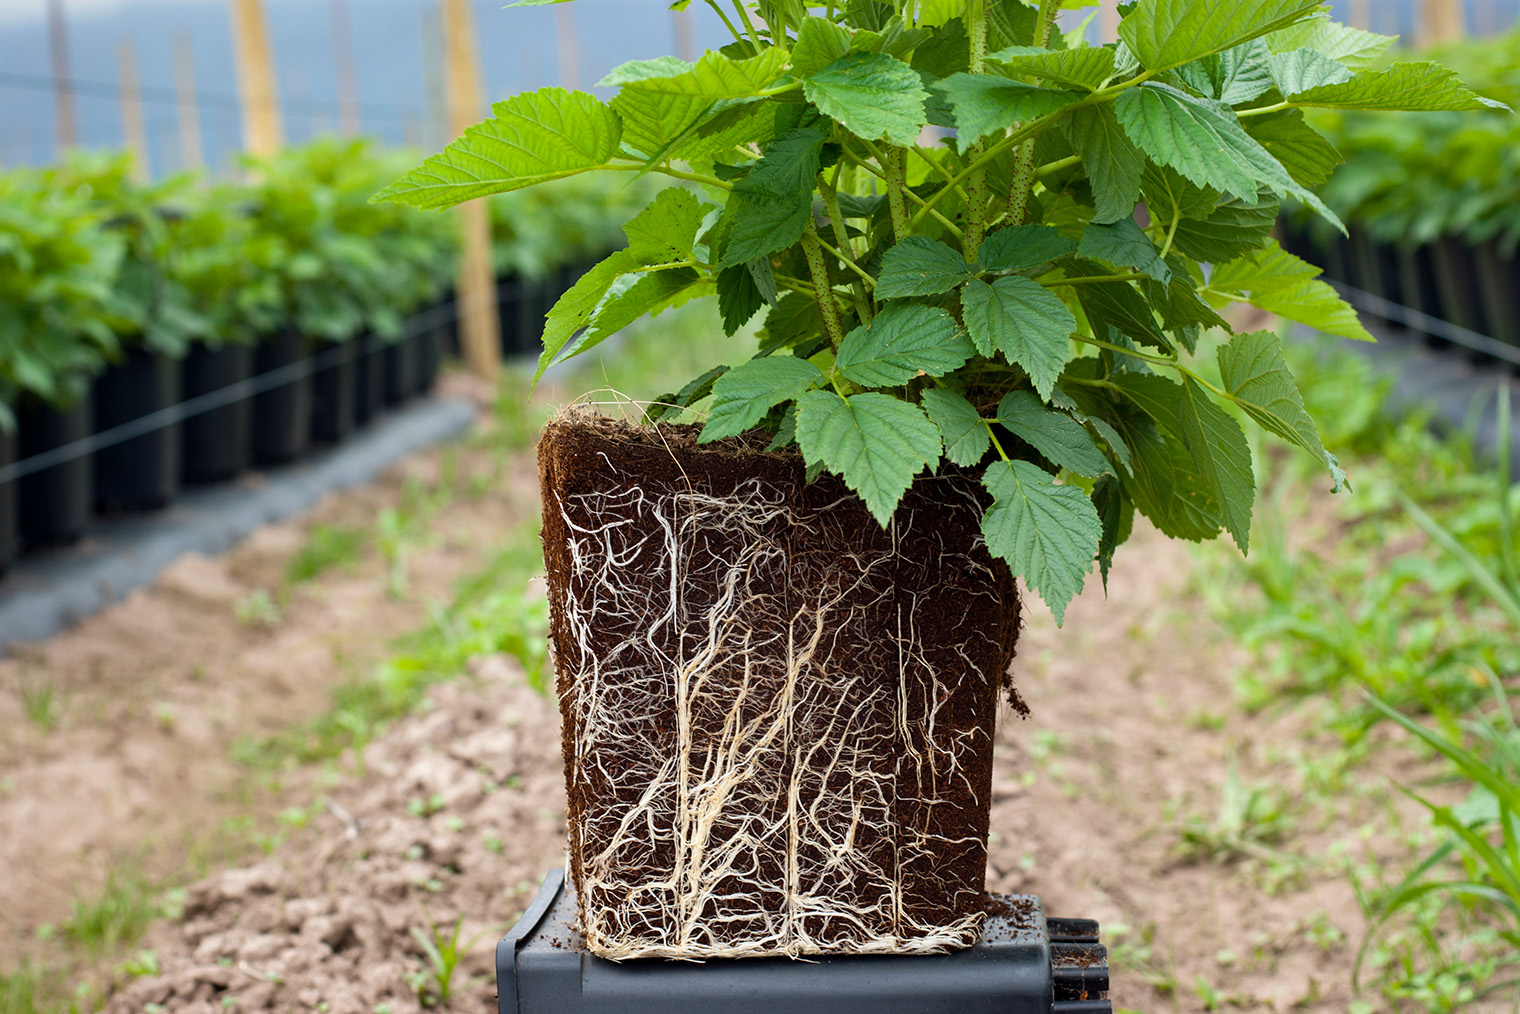 Так выглядит здоровая корневая система — с множеством тонких белых корней. Фотография: Catherine Eckert / Shutterstock / FOTODOM